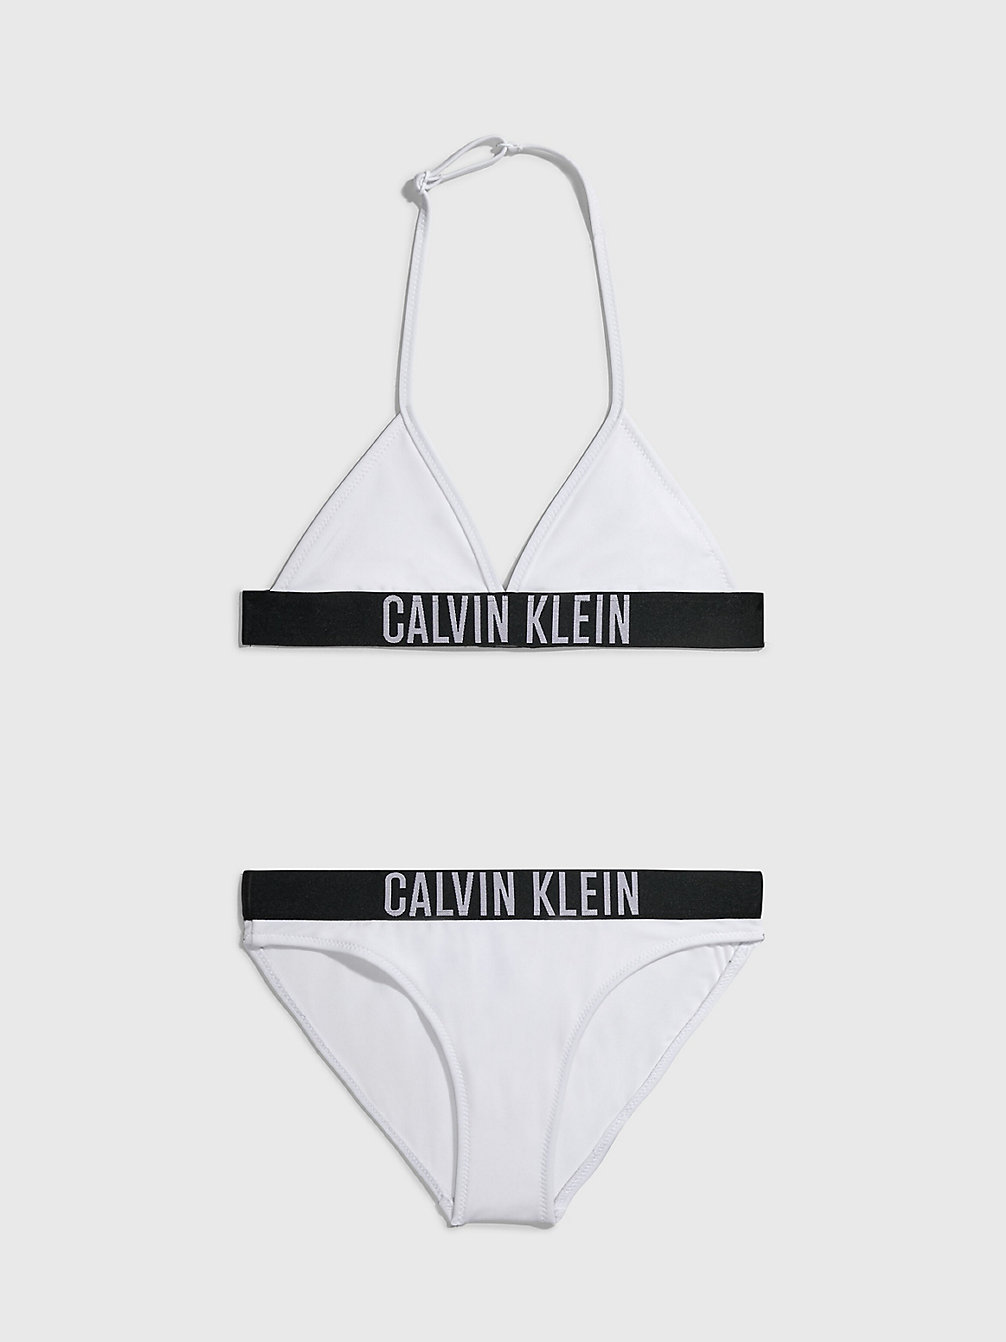 PVH CLASSIC WHITE > Triangelbikini Voor Meisjes - Intense Power > undefined girls - Calvin Klein